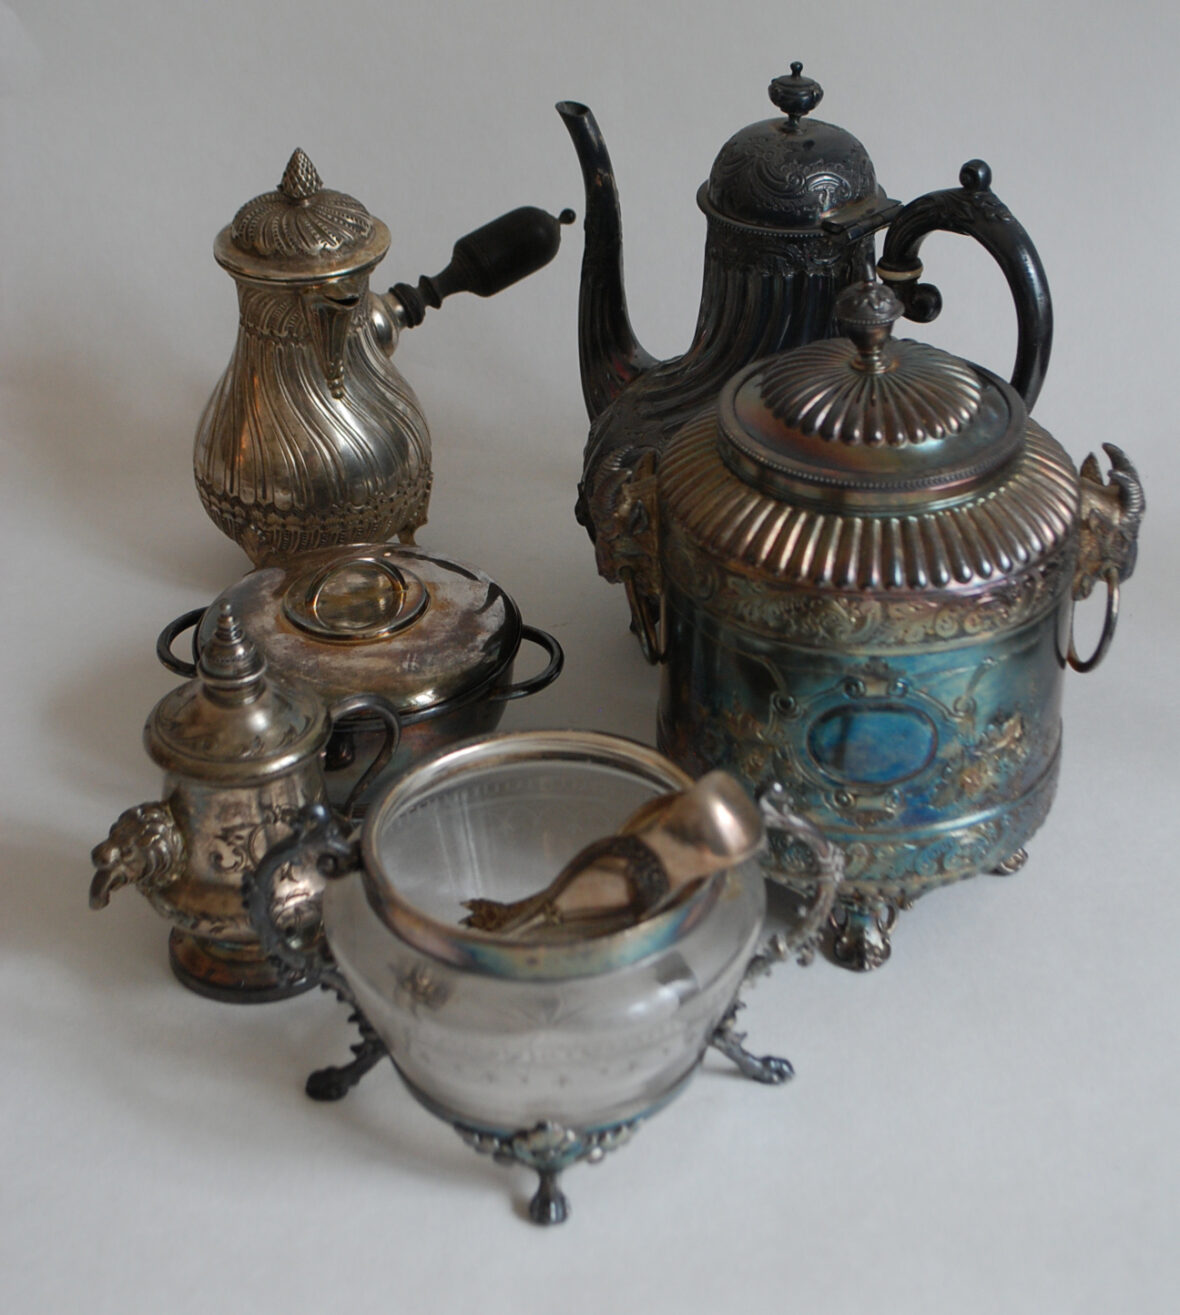 Ensemble en métal argenté comprenant une petite cafetière, une boîte couverte, une théière, un sucrier le récipient en verre gravé (manque le couvercle), une petite fontaine et un sucrier couvert uniplat.